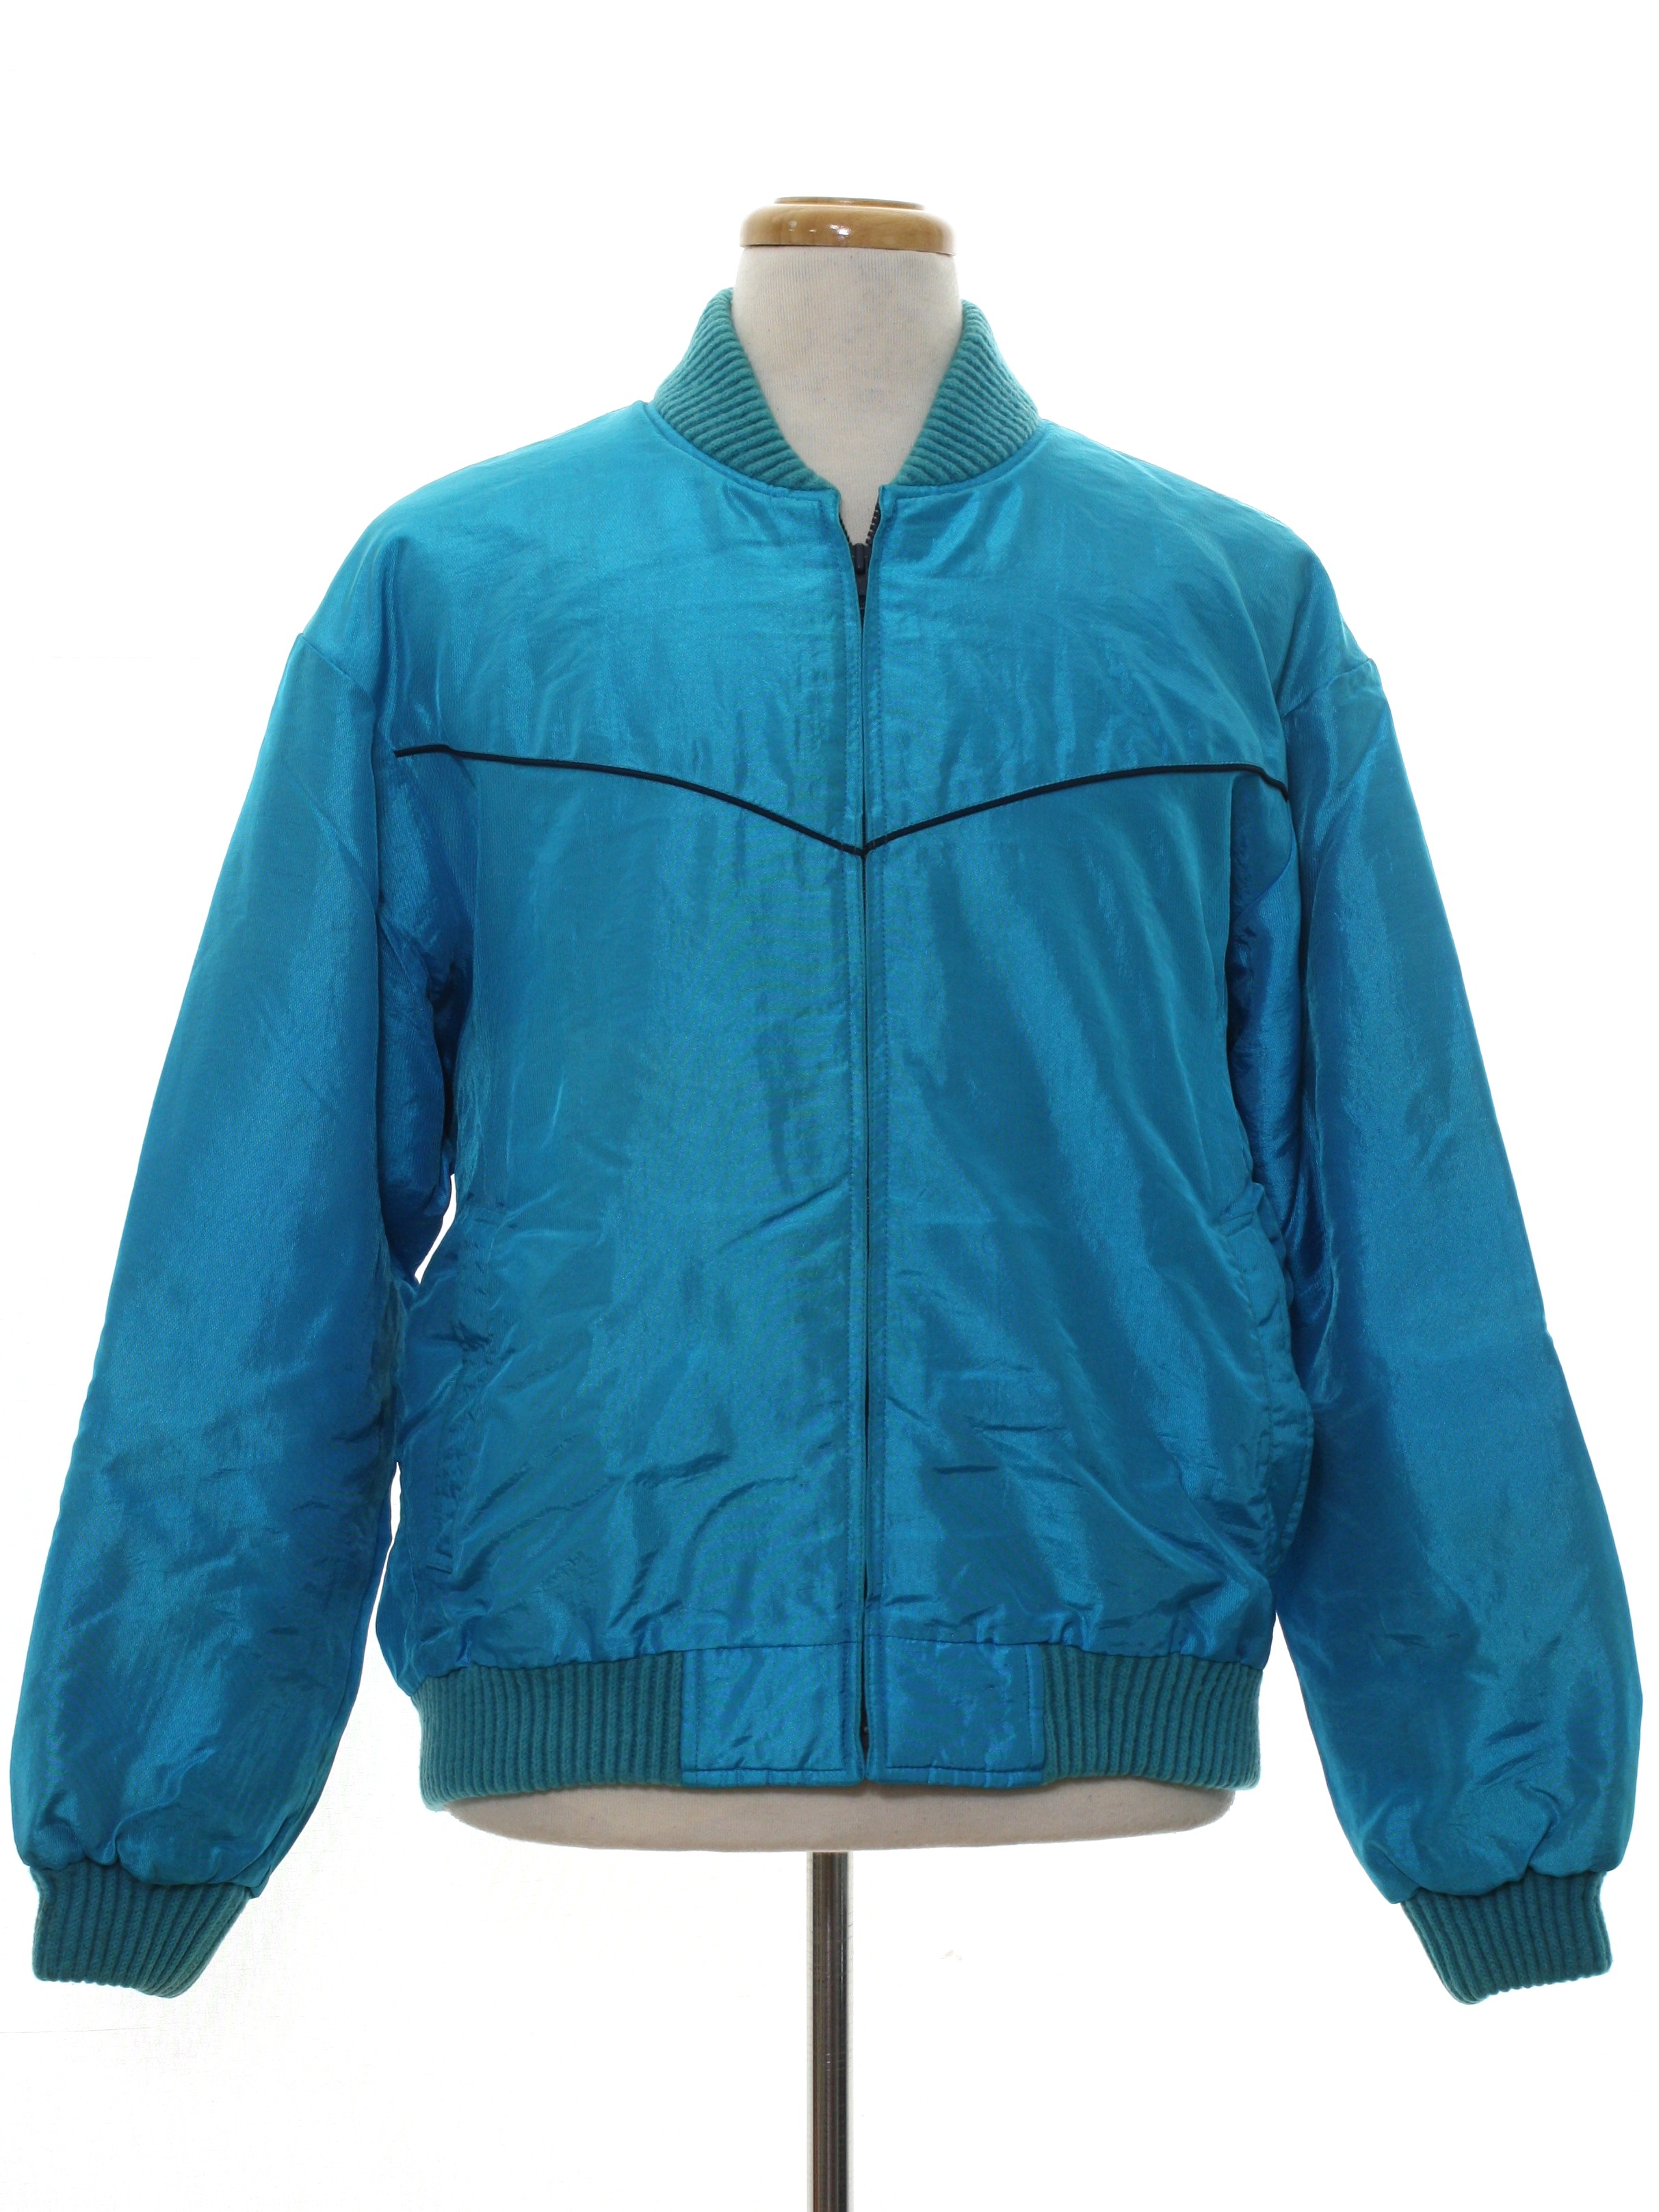 Vintage 1980's Jacket: 80s -Comfy Casuals- Mens bright aqua blue ...